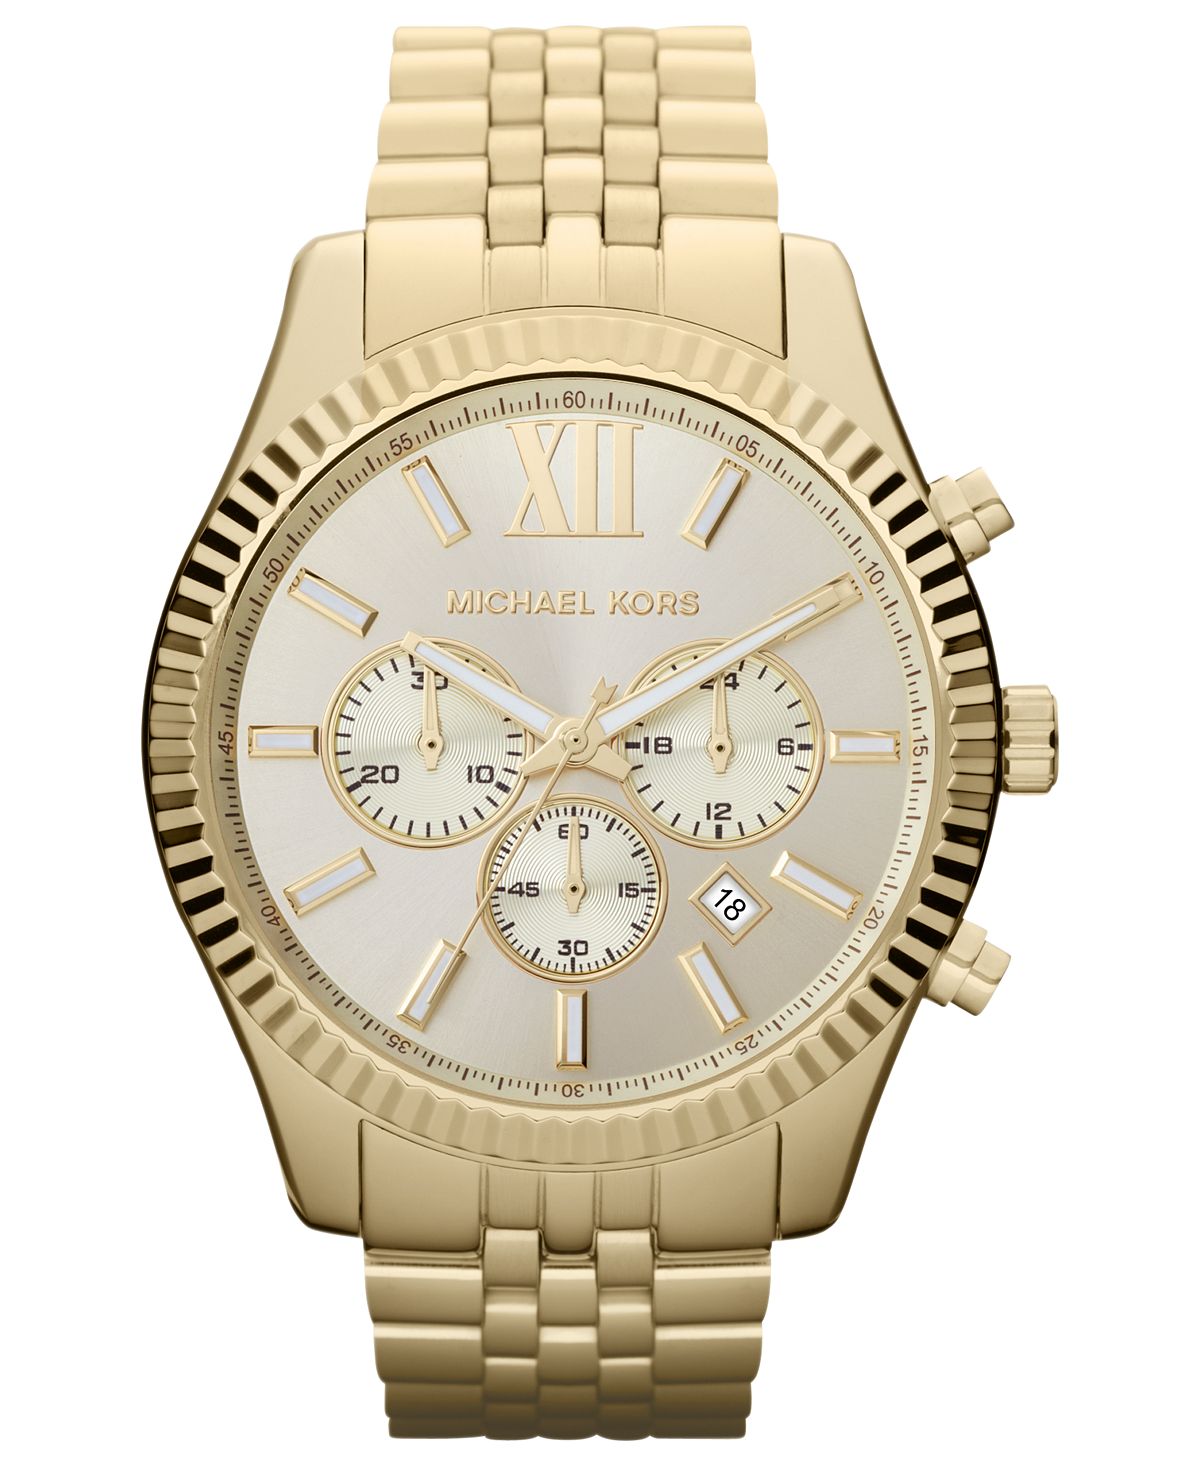 Мужские часы-хронограф Lexington с золотистым браслетом из нержавеющей стали, 45 мм, MK8281 Michael Kors цена и фото